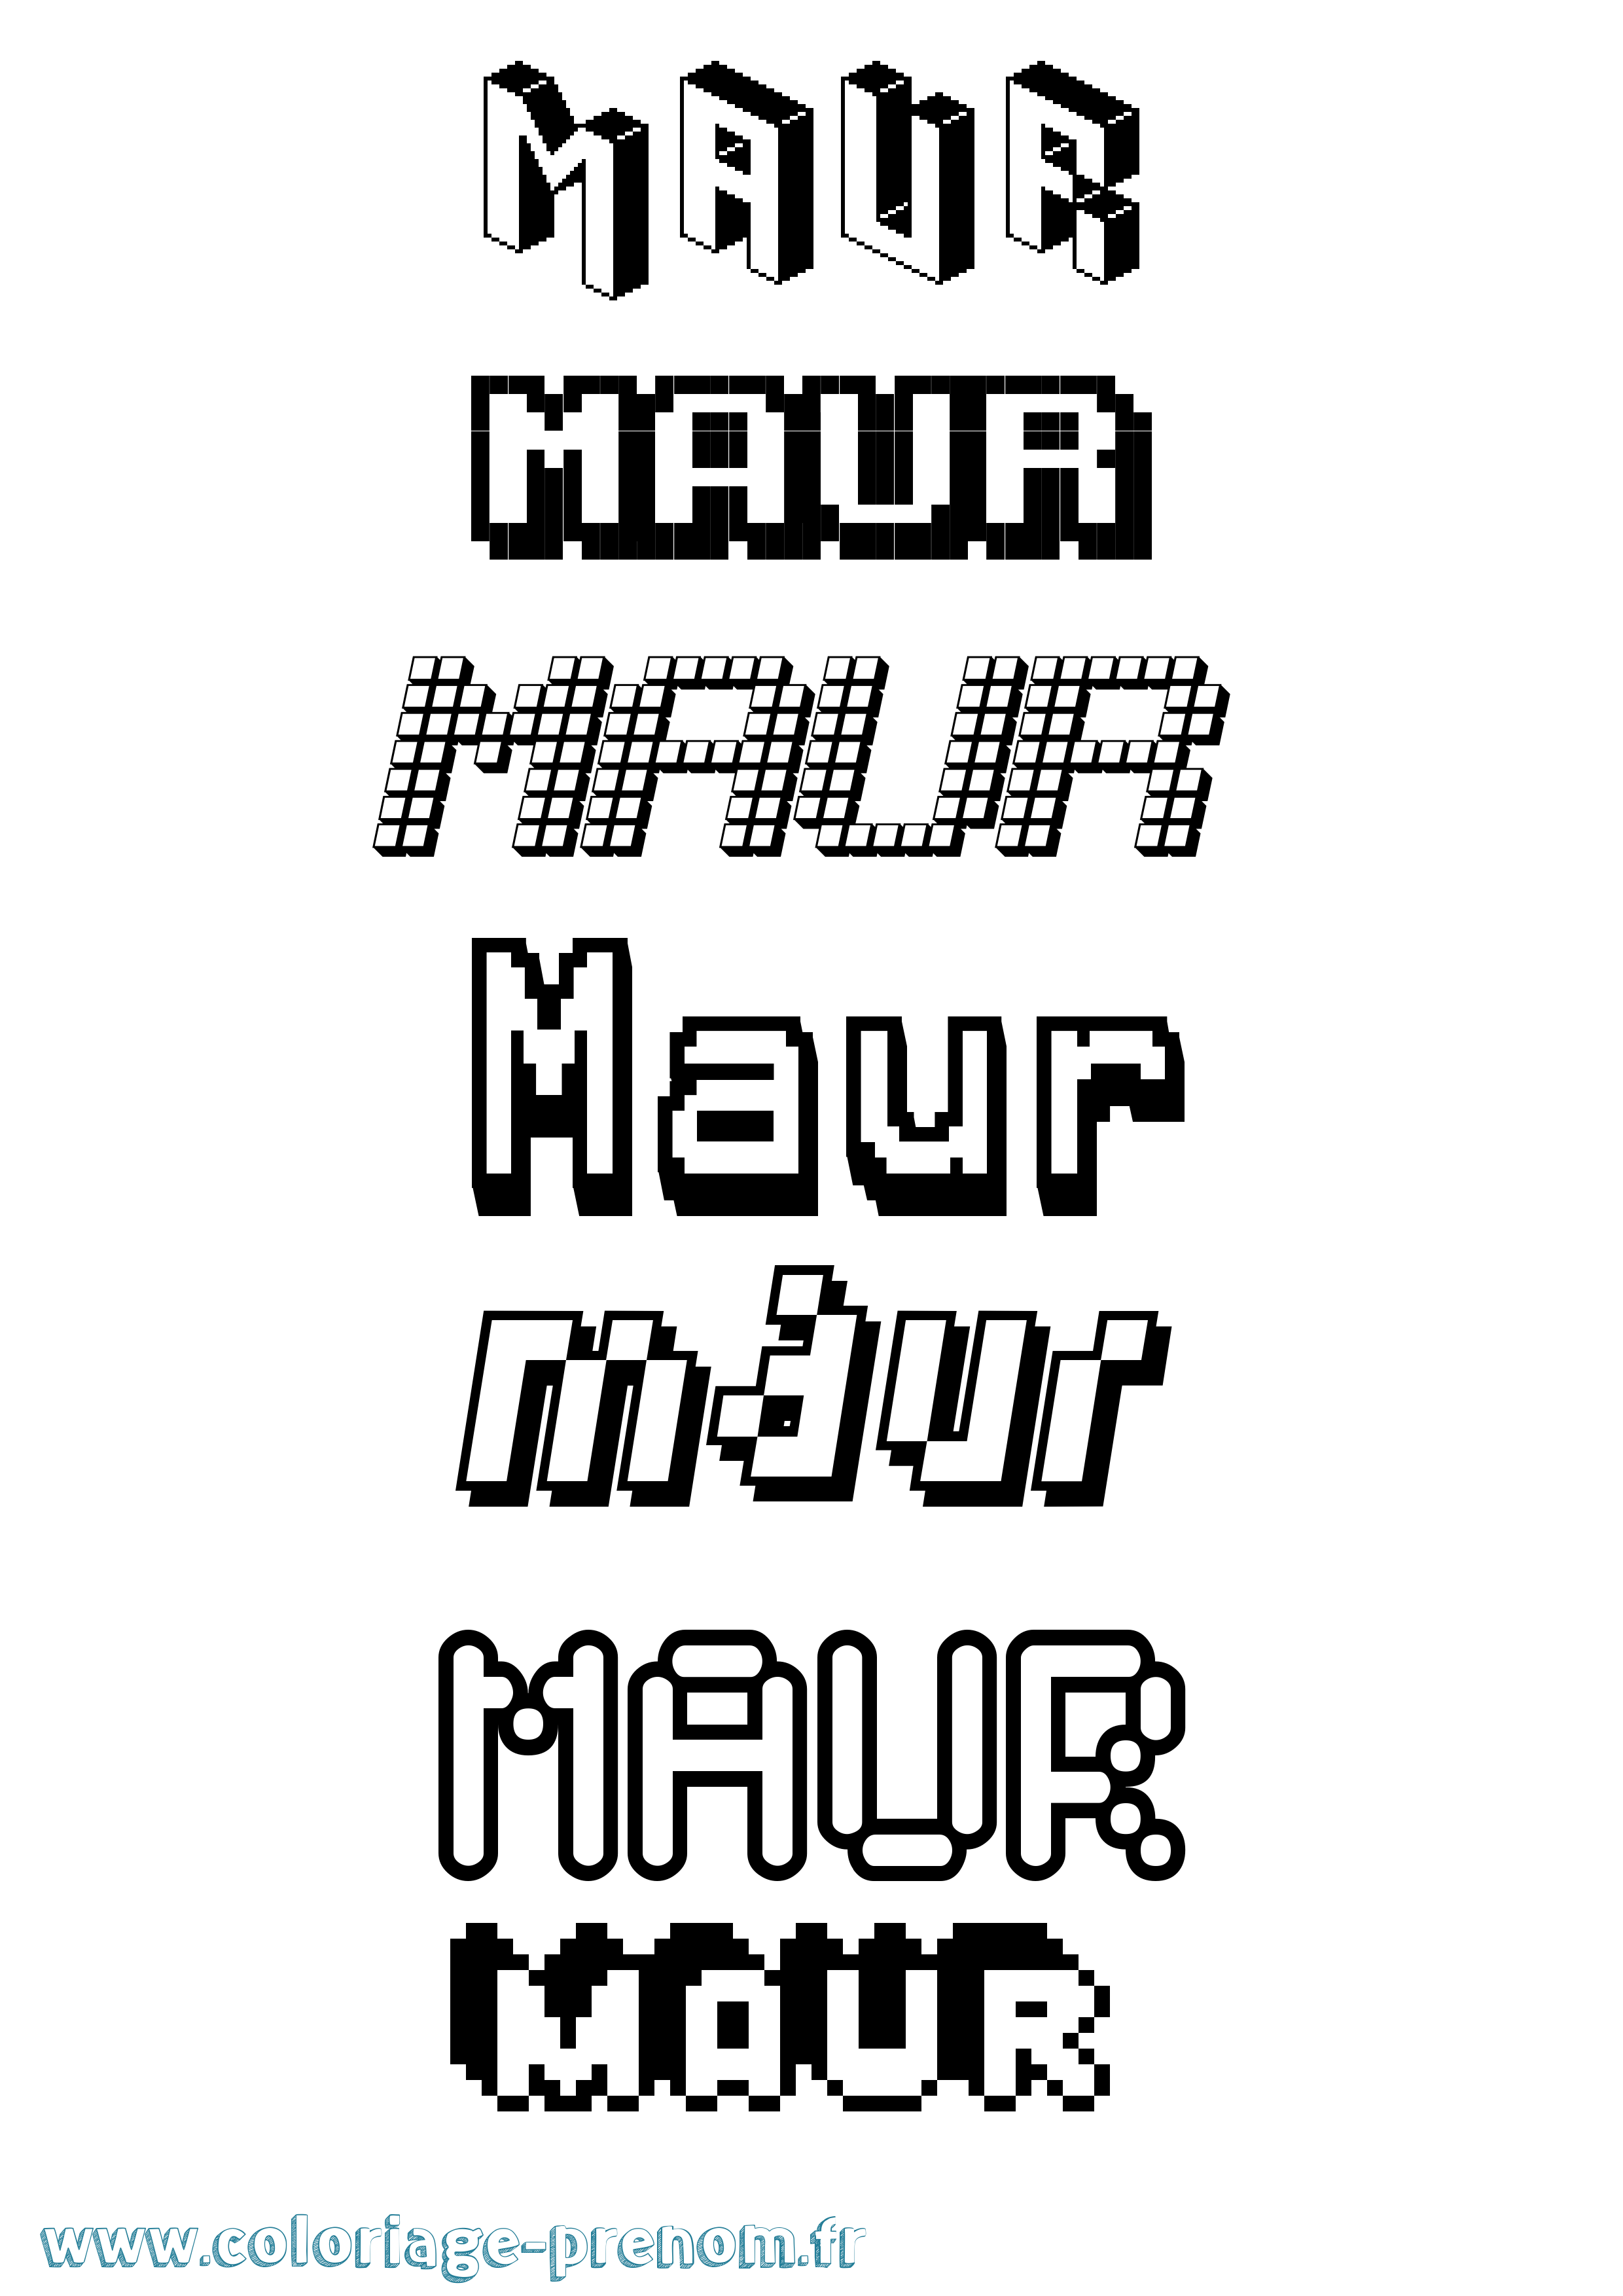 Coloriage prénom Maur Pixel